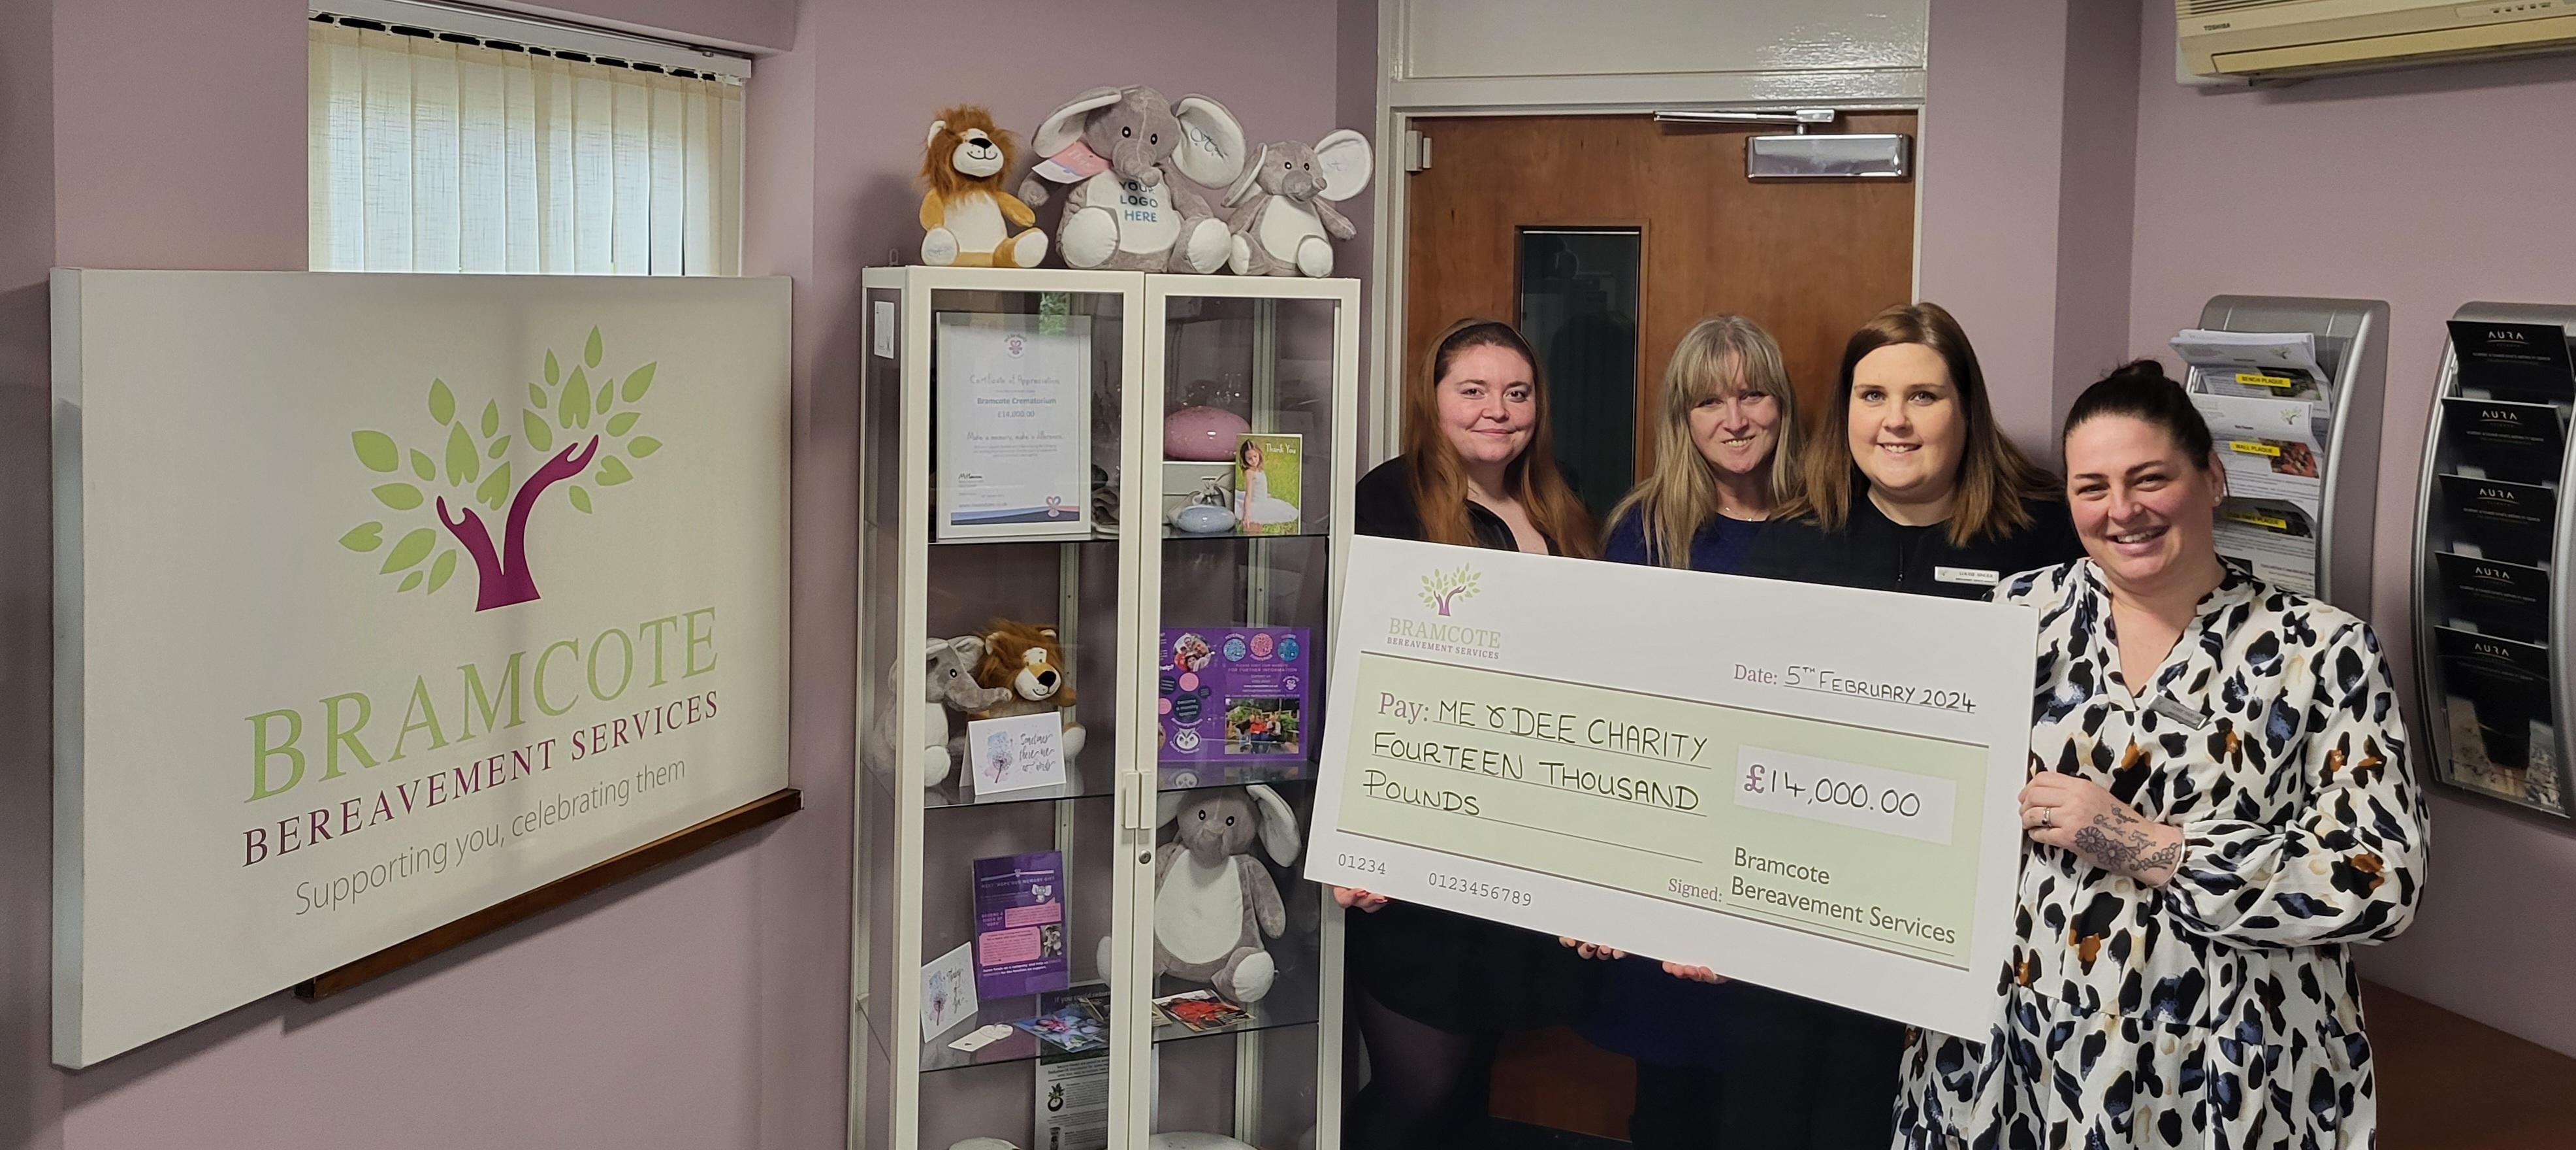 Bramcote Crematorium Raises £14,000 for Me & Dee Charity